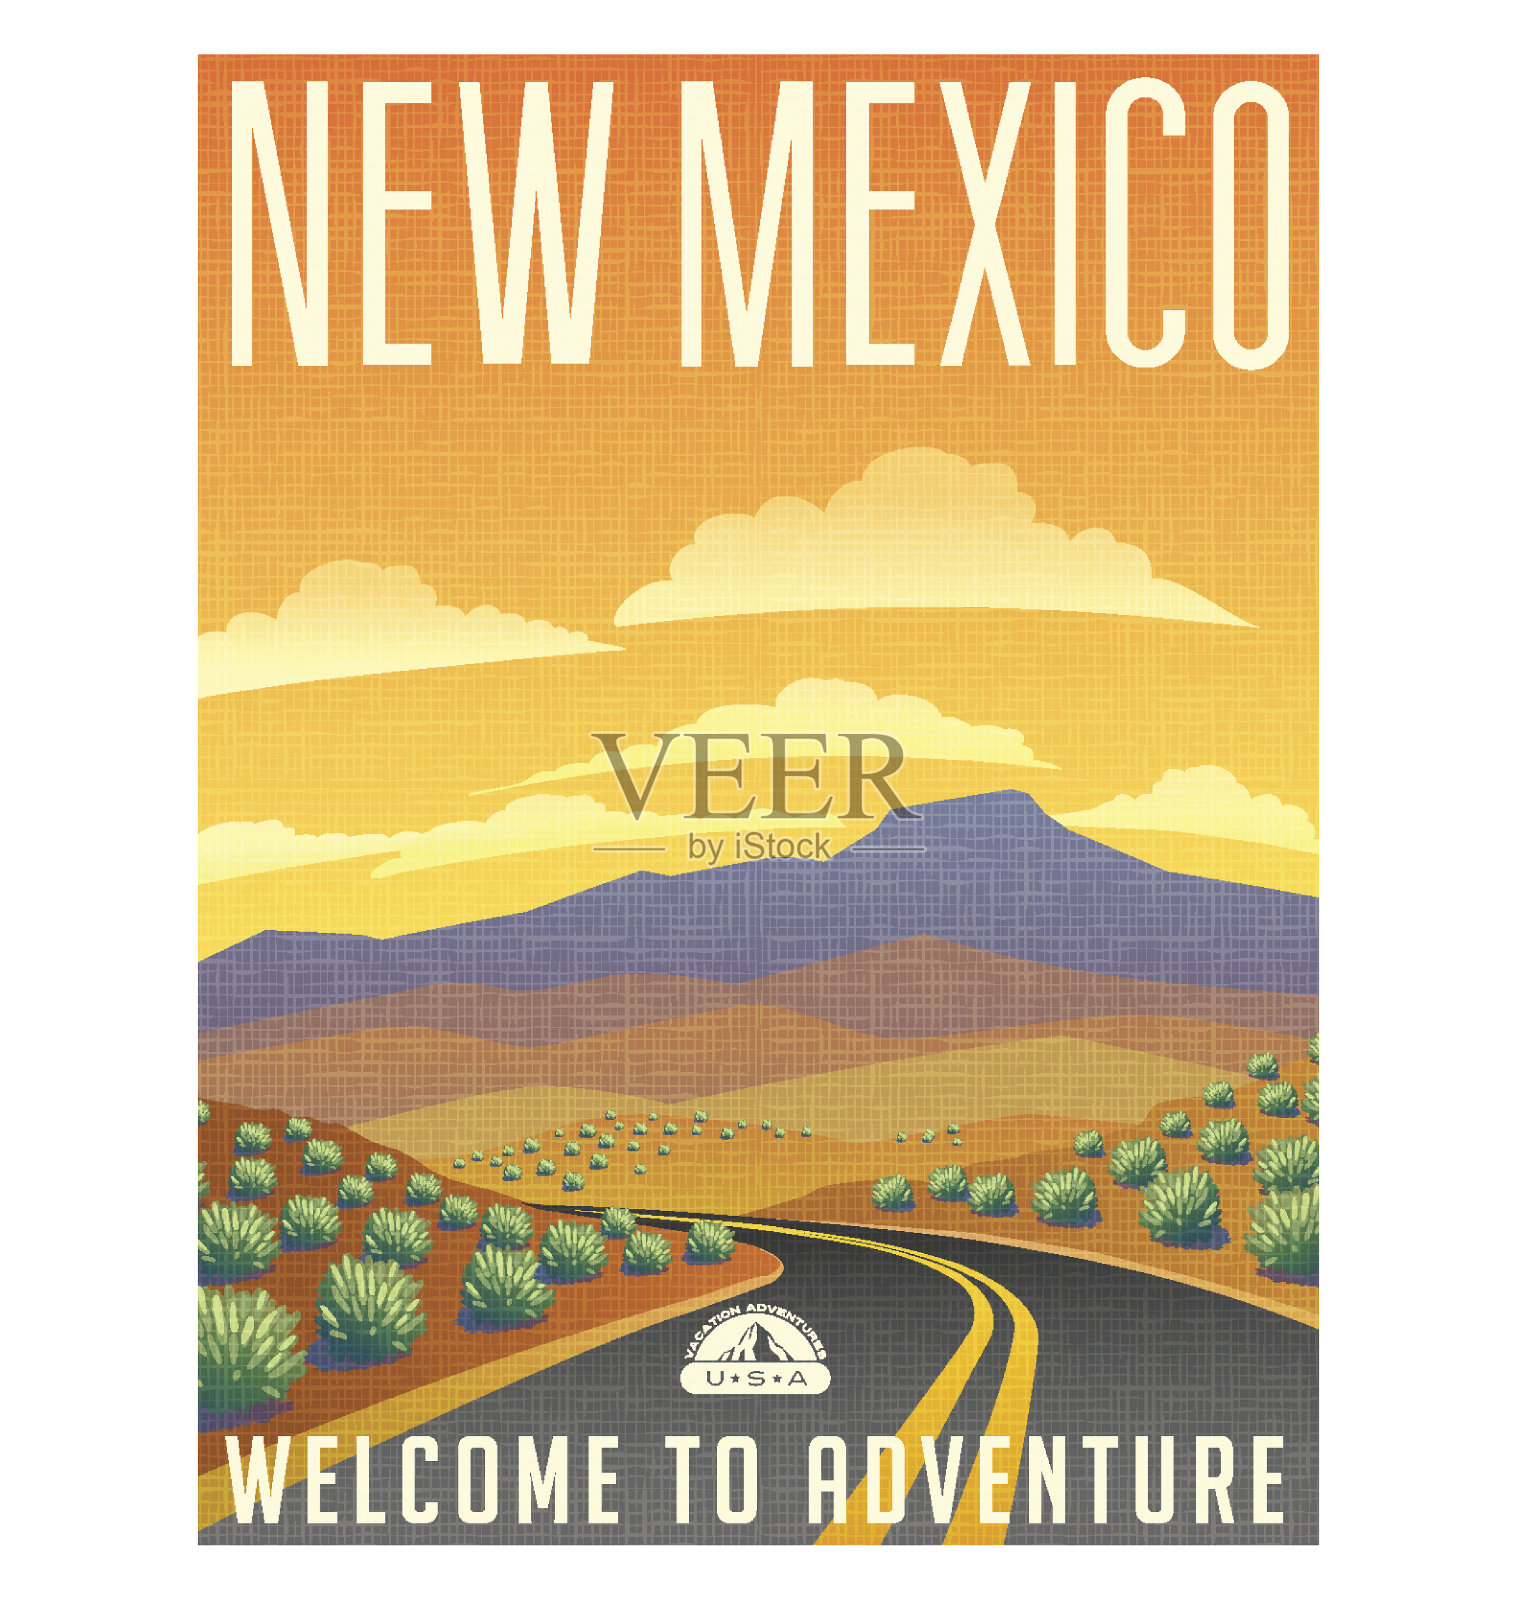 复古风格的旅行海报或贴纸。美国新墨西哥州沙漠山地景观。设计模板素材